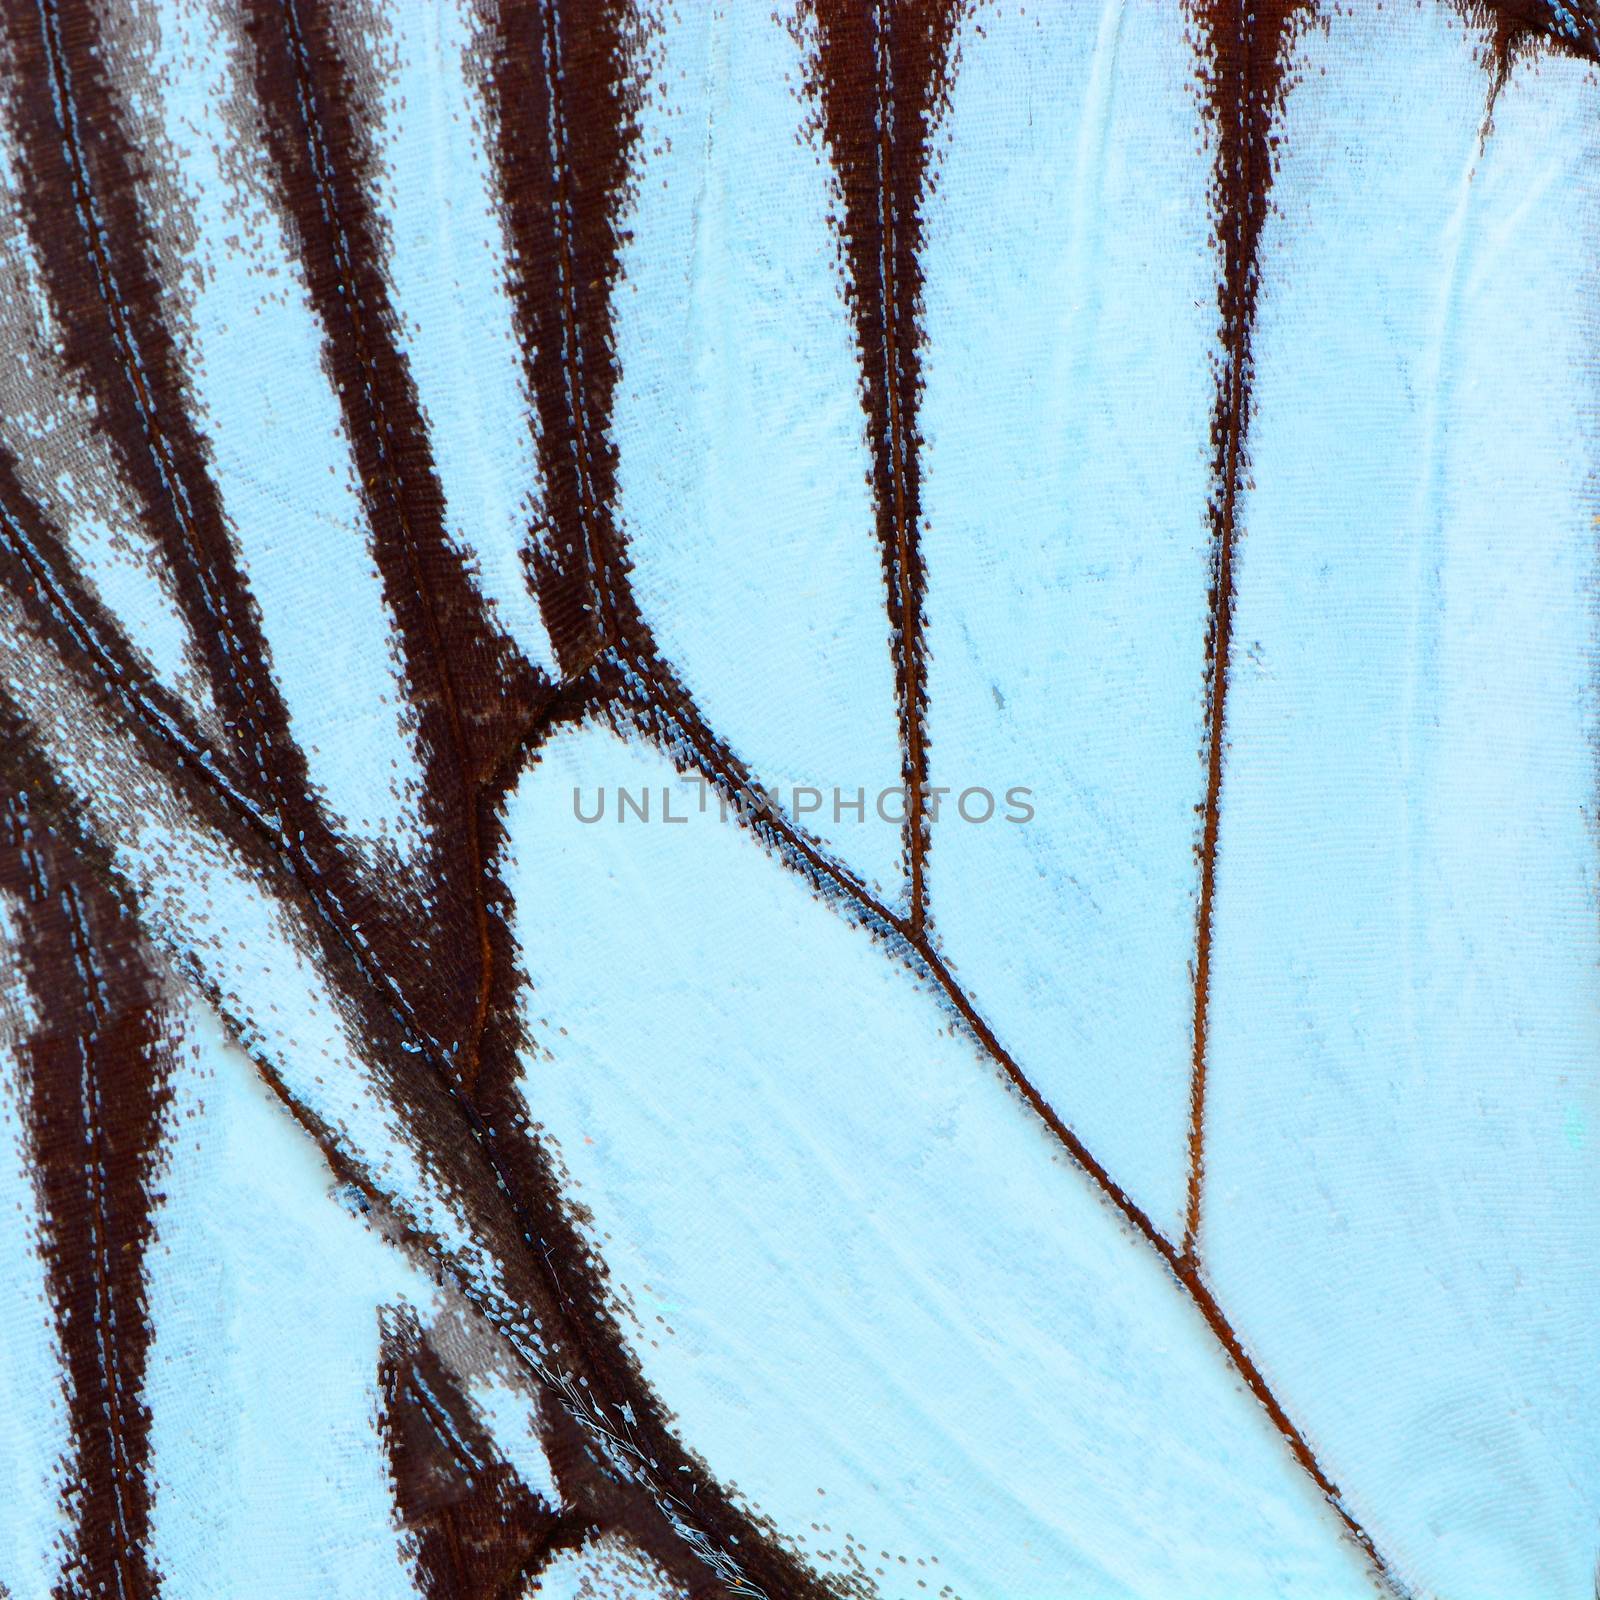 blue butterfly wing by panuruangjan